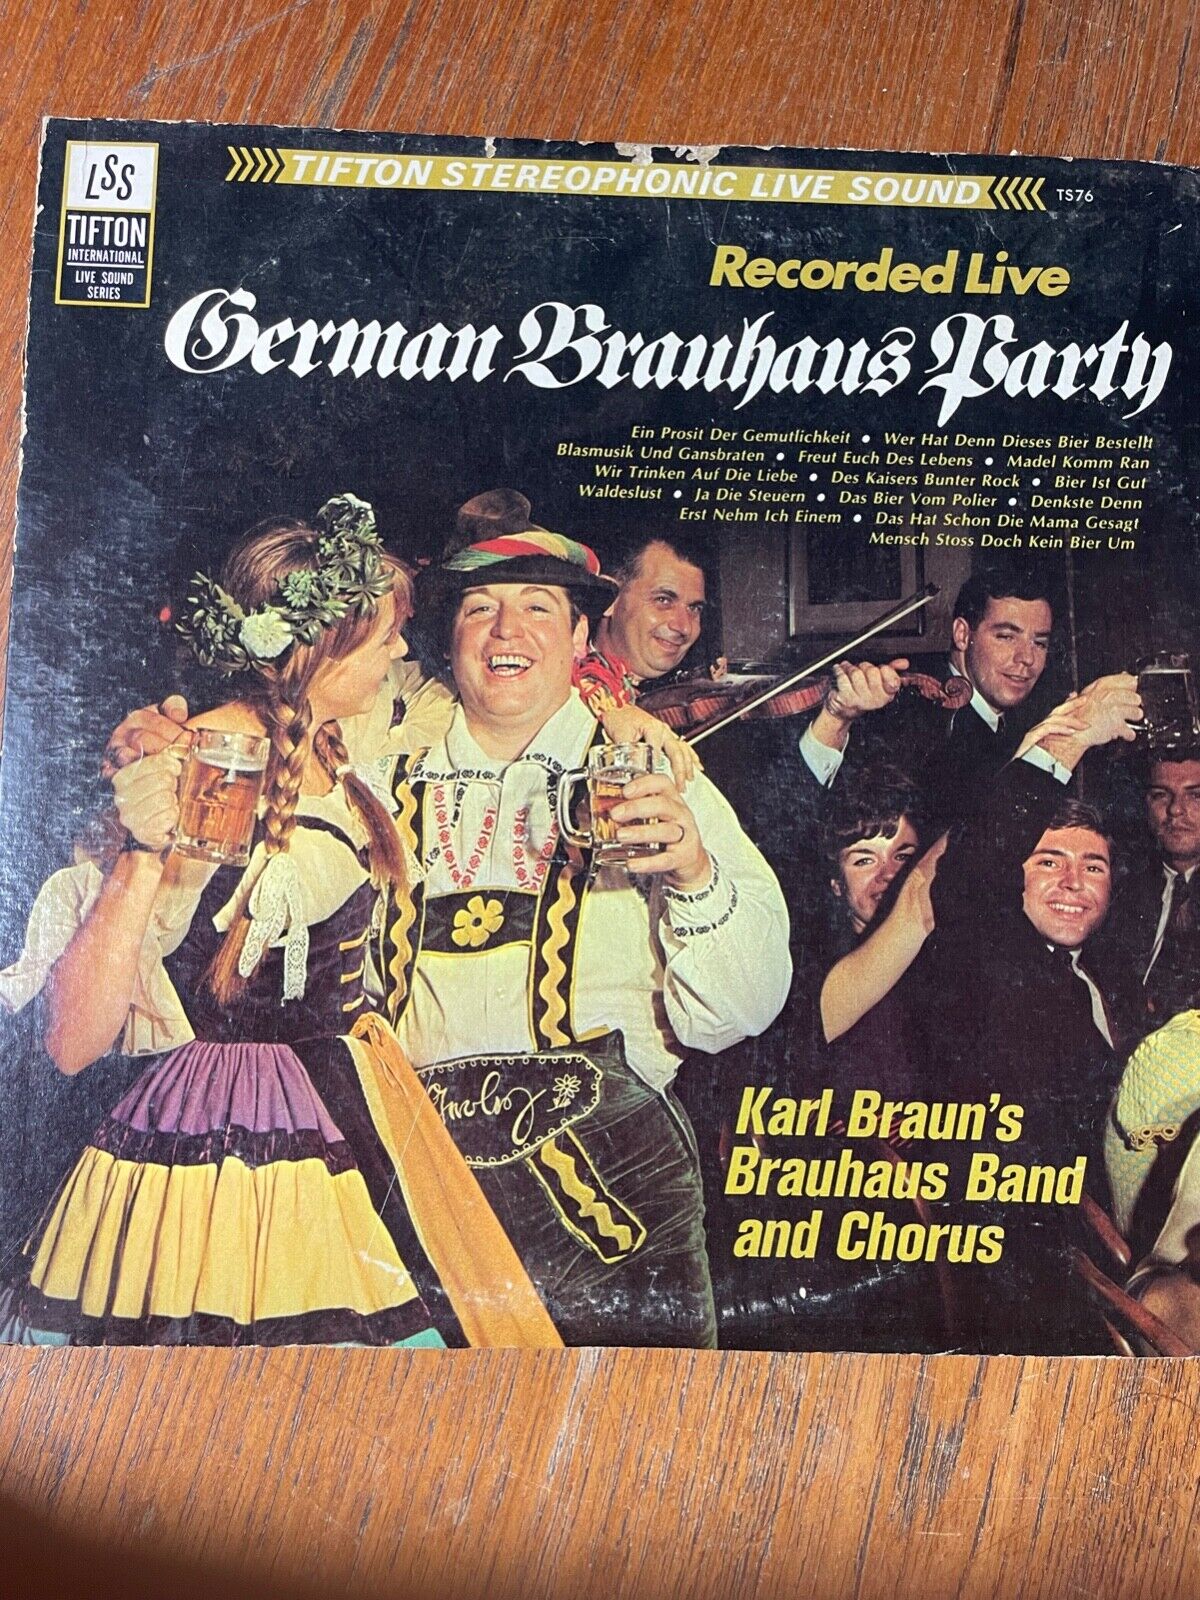 Karl Braun\'s Brauhaus Band and Chorus – German Brauhaus Party LP Vinyl TS76 LIVE